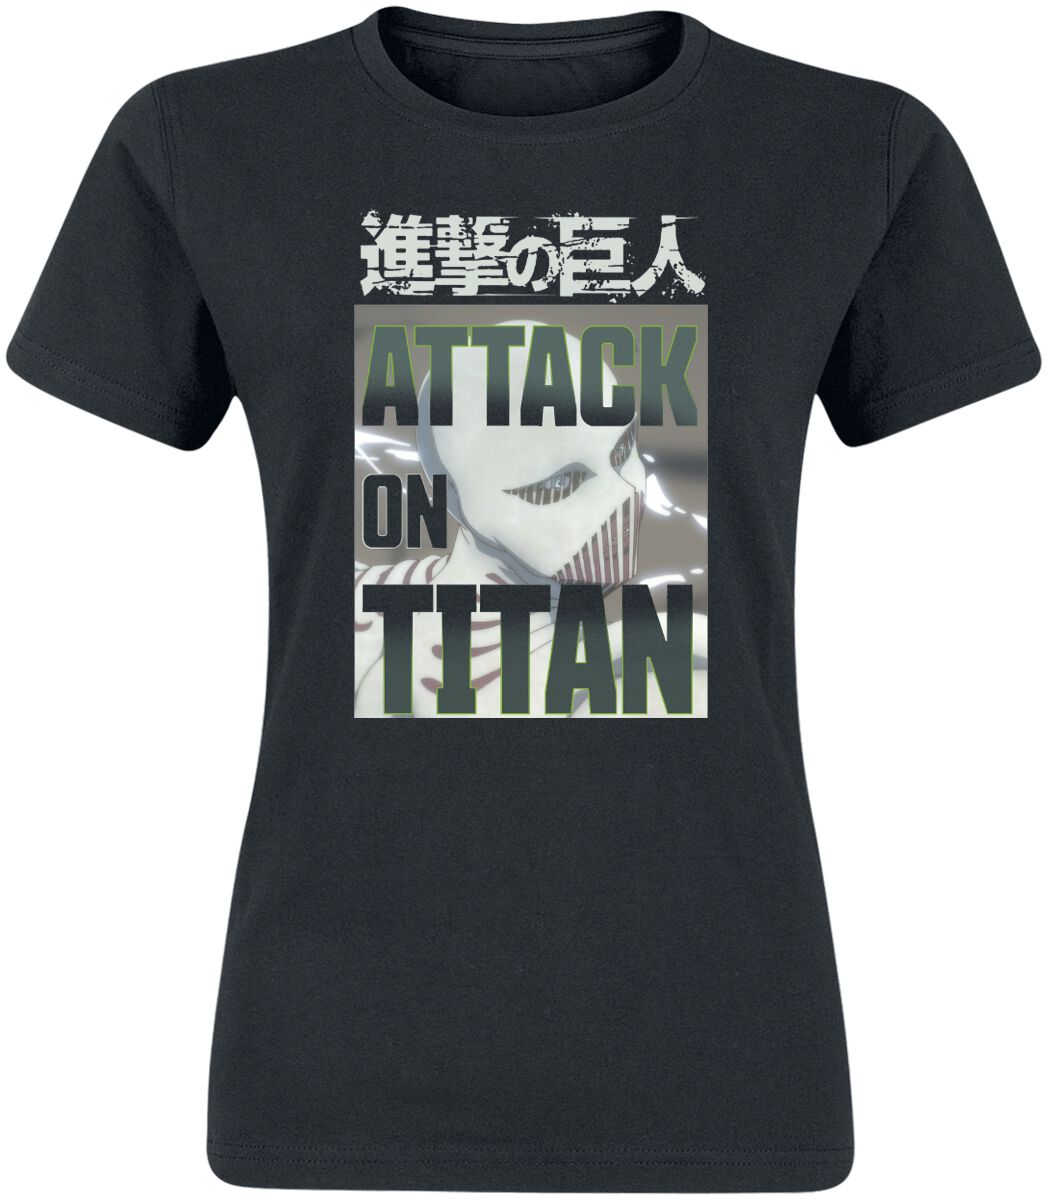 attack on titan - anime t-shirt - white titan face - m bis xxl - fÃ¼r damen - grÃ¶ÃŸe l - - lizenzierter fanartikel schwarz donna